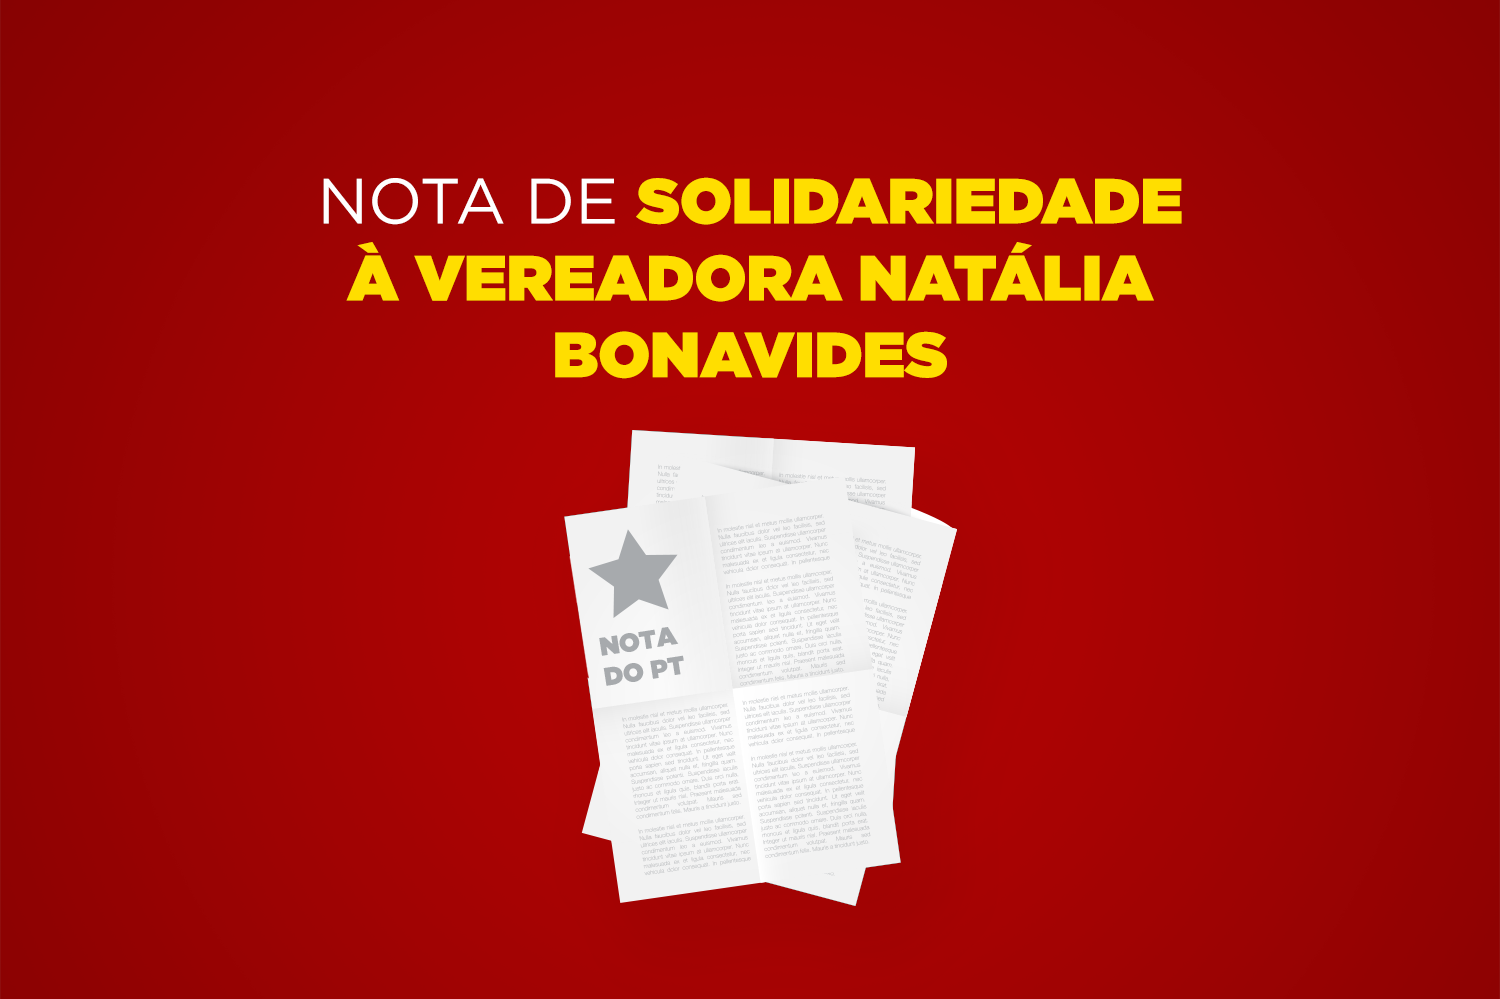 Nota do PT: solidariedade à vereadora Natália Bonavides